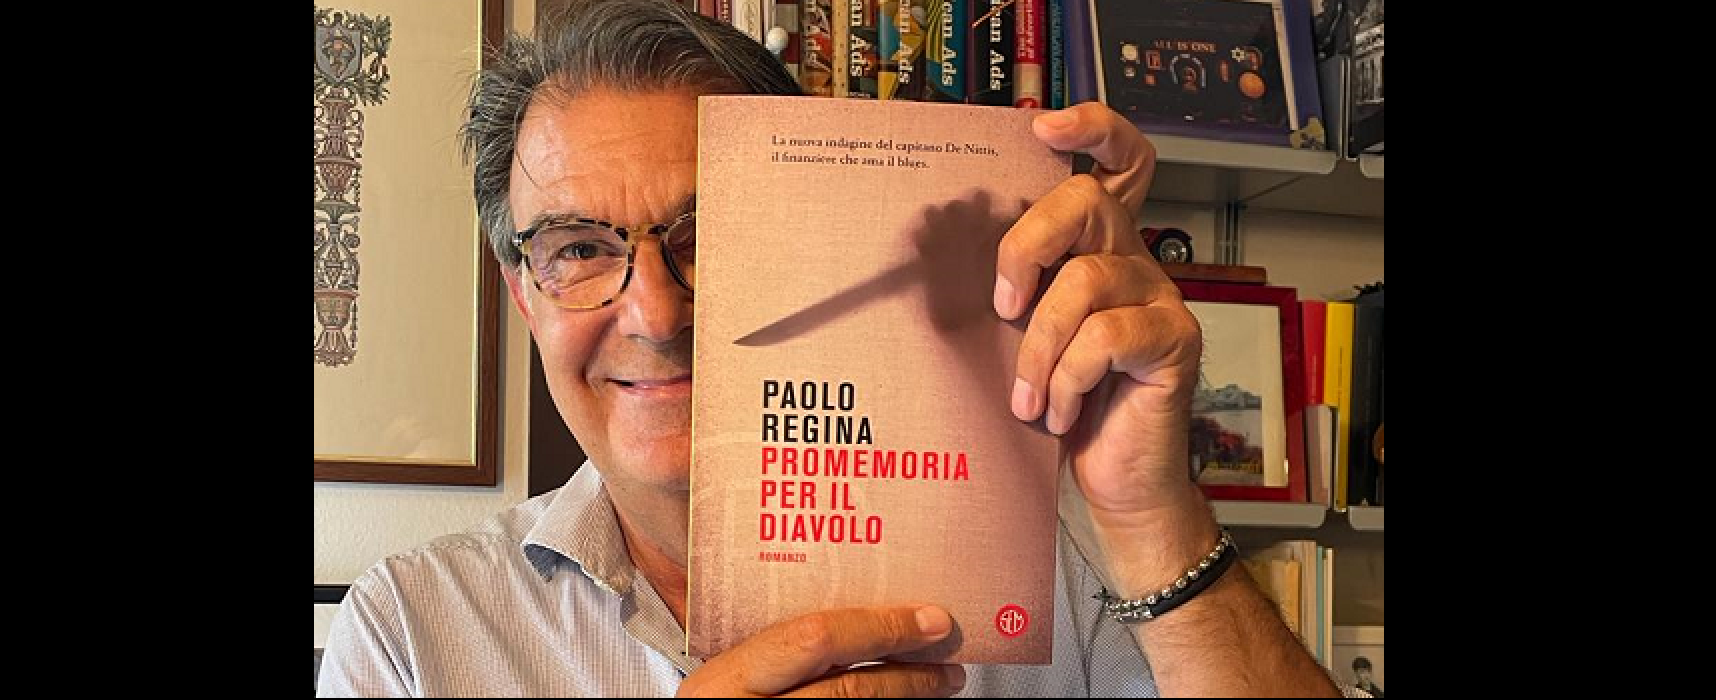 “Prendi un romanzo al chiar di luna”, il giallista Paolo Regina aprirà la terza edizione